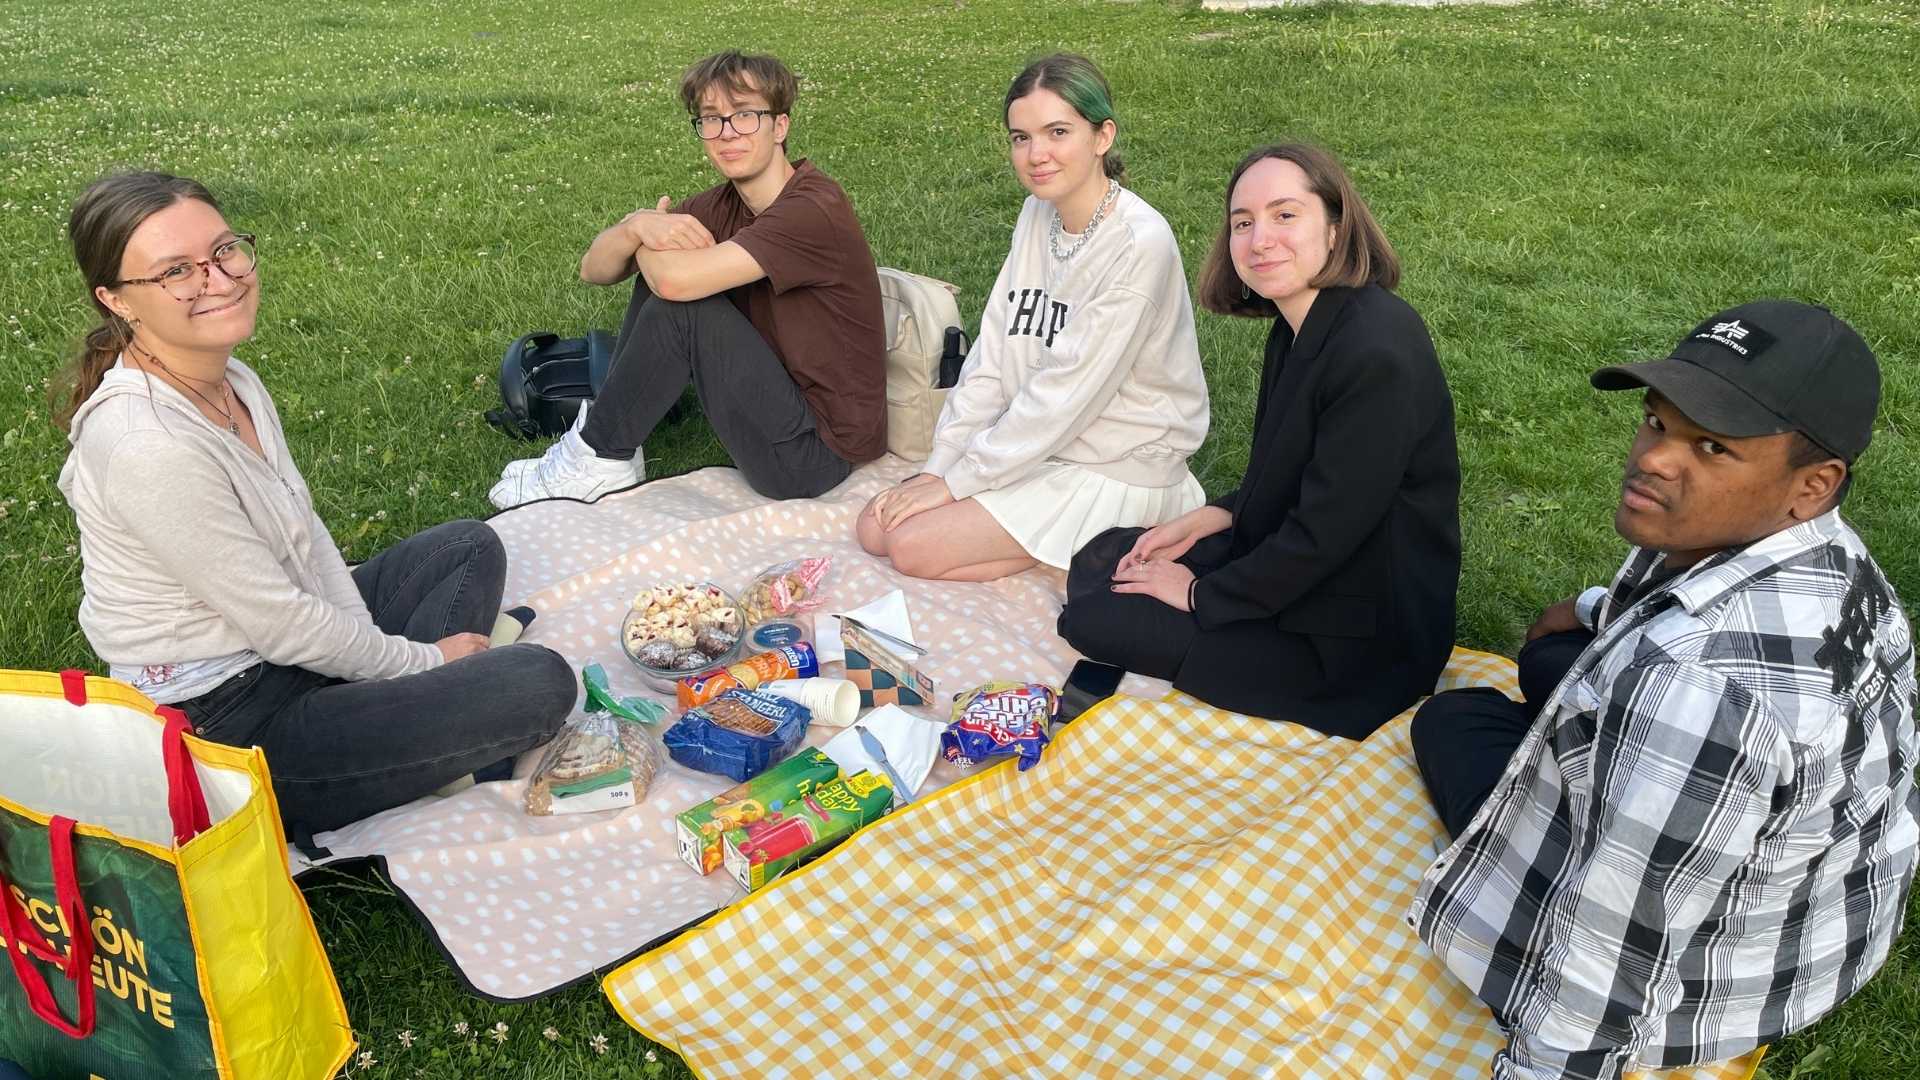 Picknick zum Semesterabschlusss der Uni-Freunde